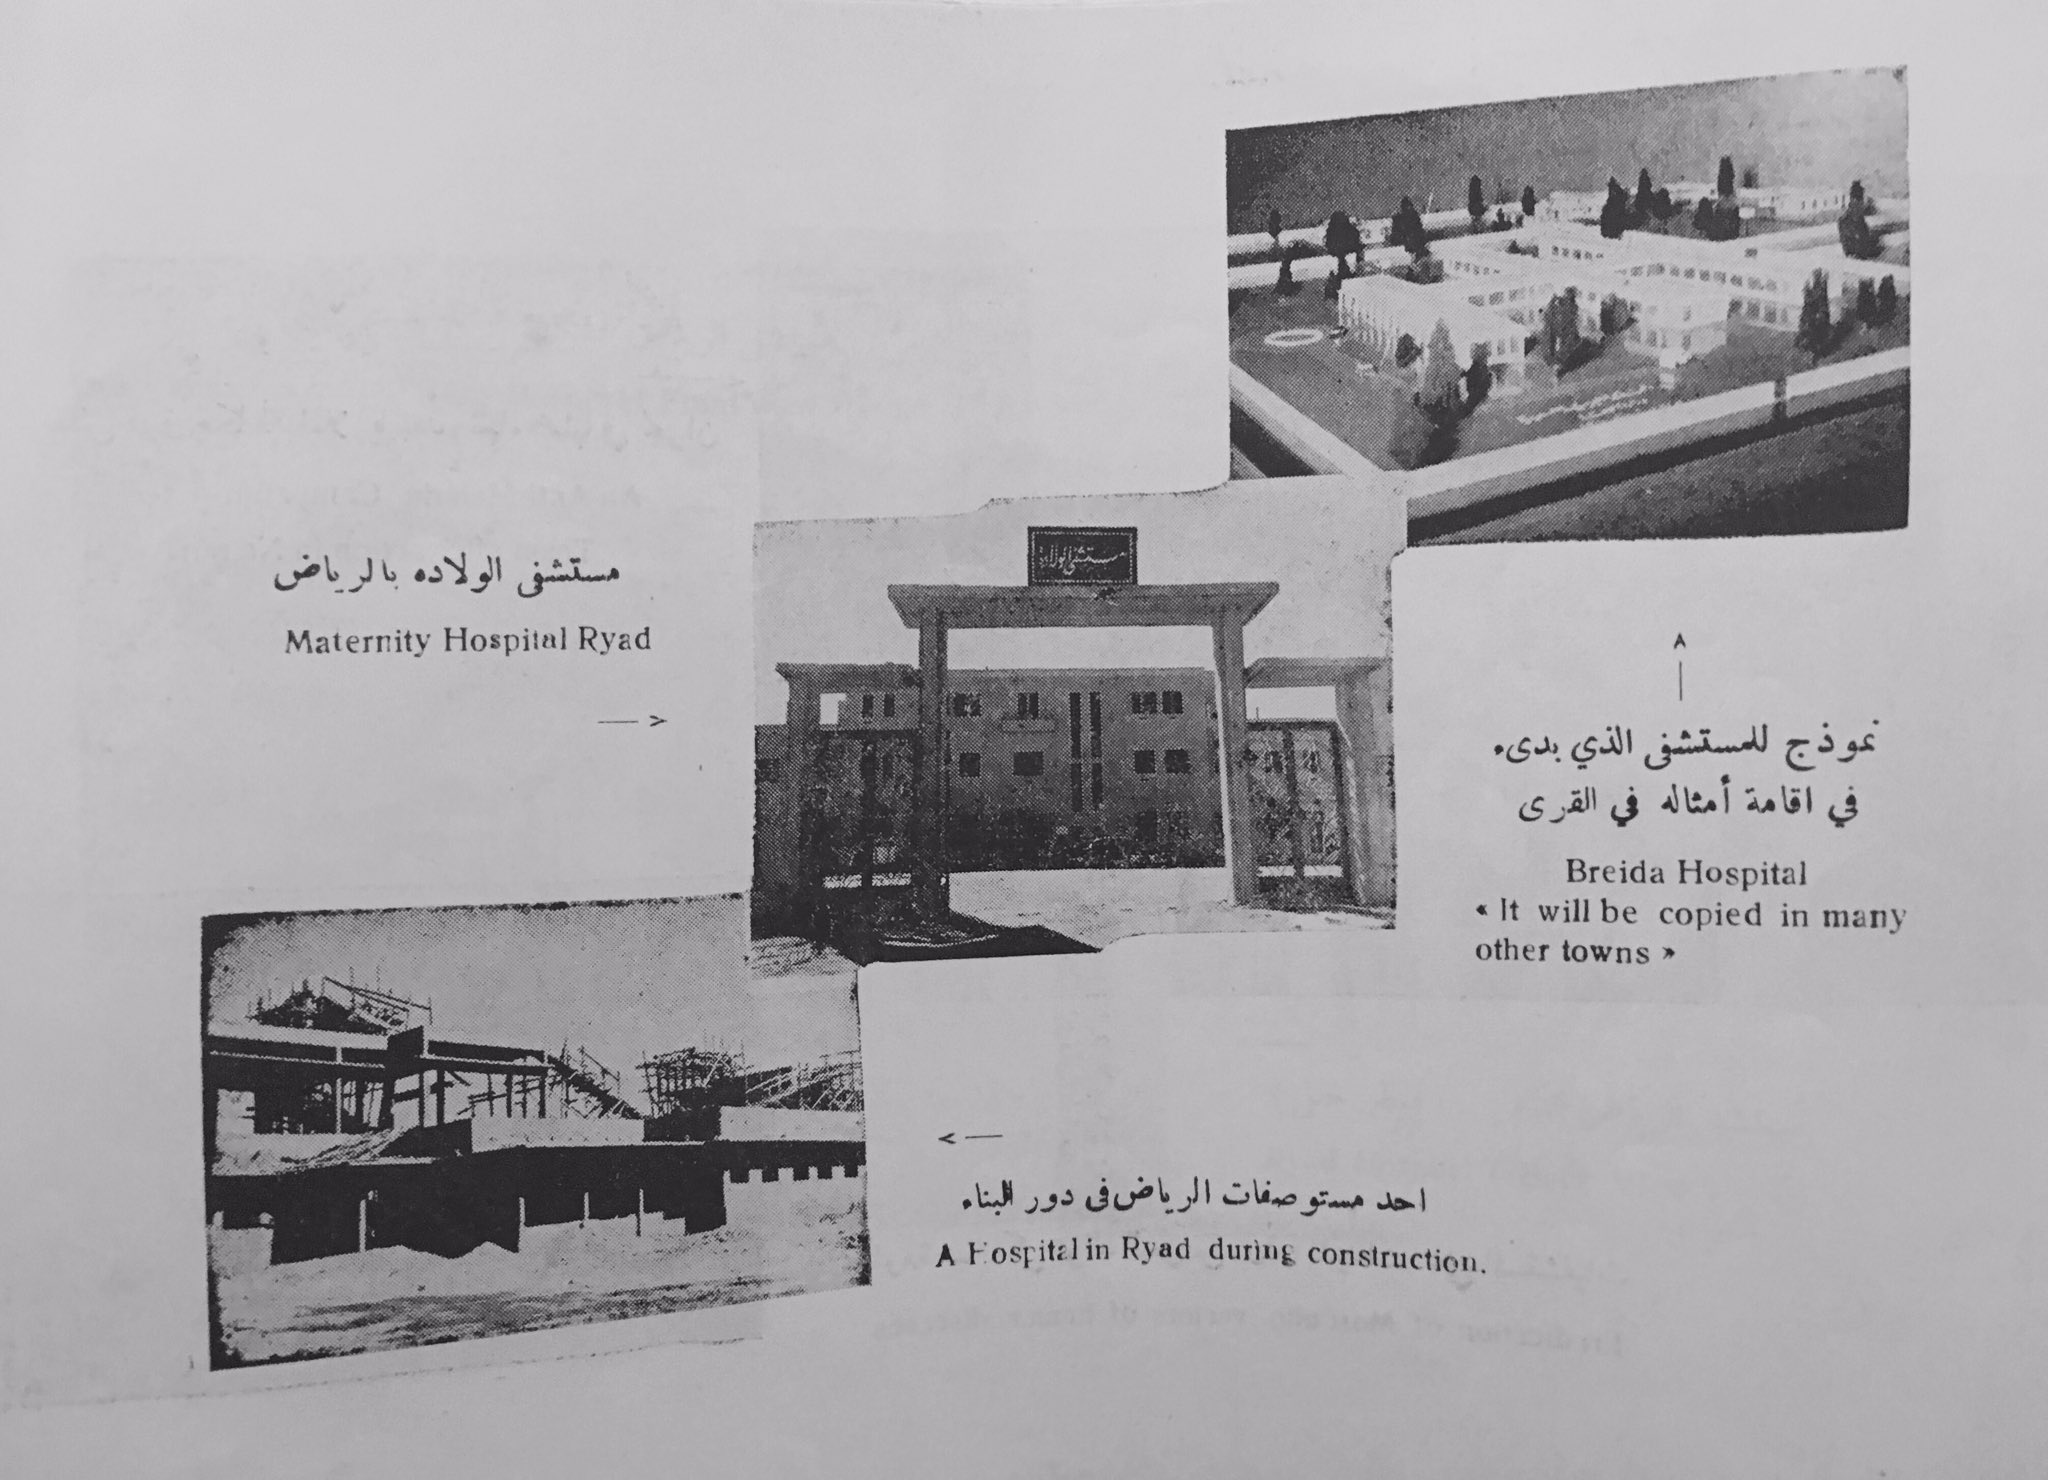 وزارة الصحة في عهد الملك سعود:بناء  مستشفى بريدة نموذجا ومستشفو  الملك سعود,ومستشفى الولادة في الرياض ١٩٥٦